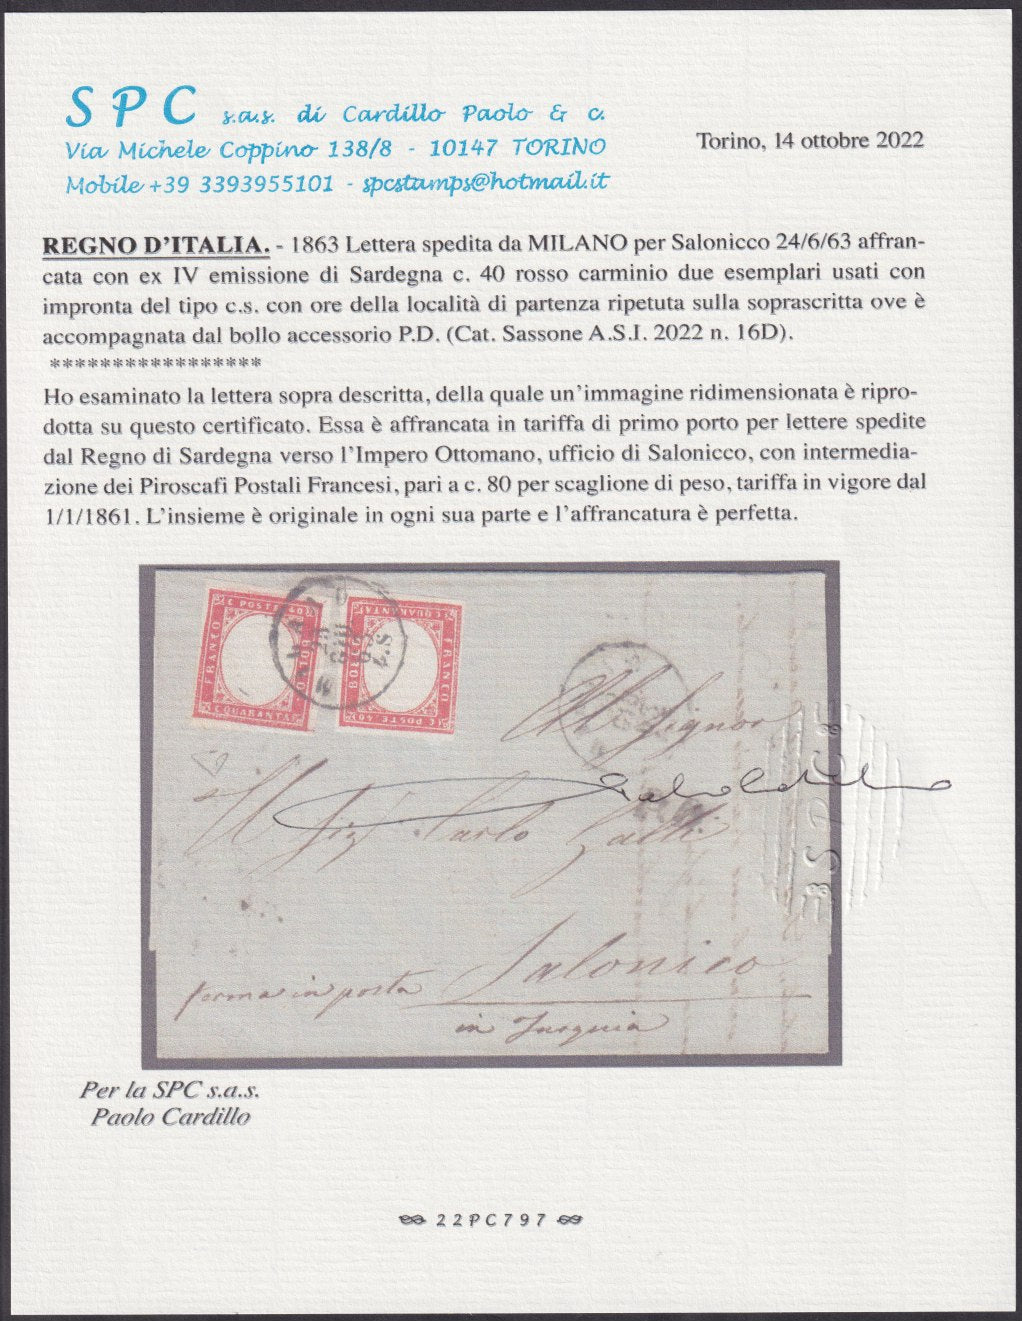 BO22-12 - IV emissione, c.40 rosso carminio due esemplari su lettera da MILANO per Salonicco 9/5/62